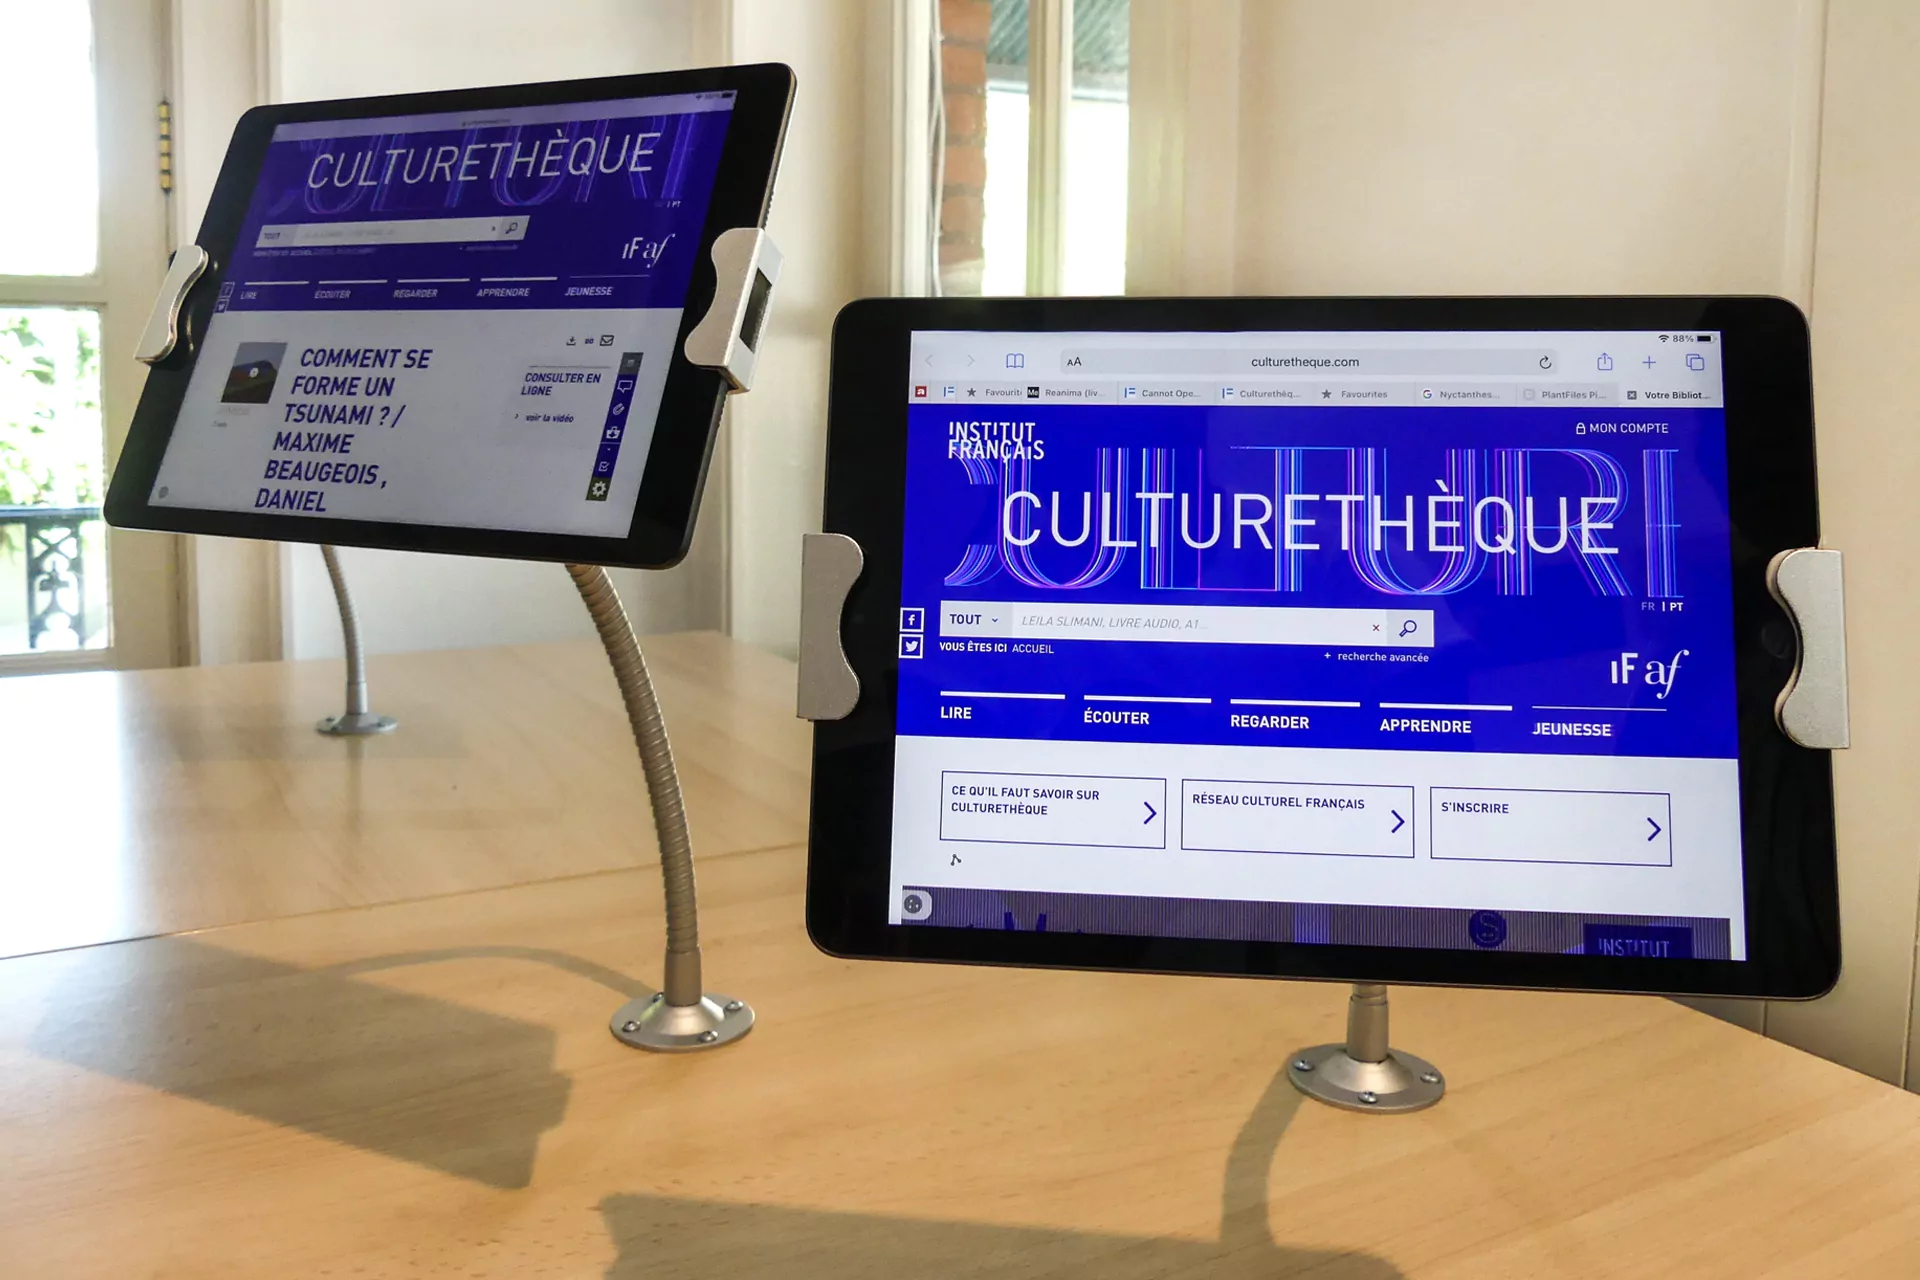 HD_CCFM_Mediateca-Culturetheque-Tablets